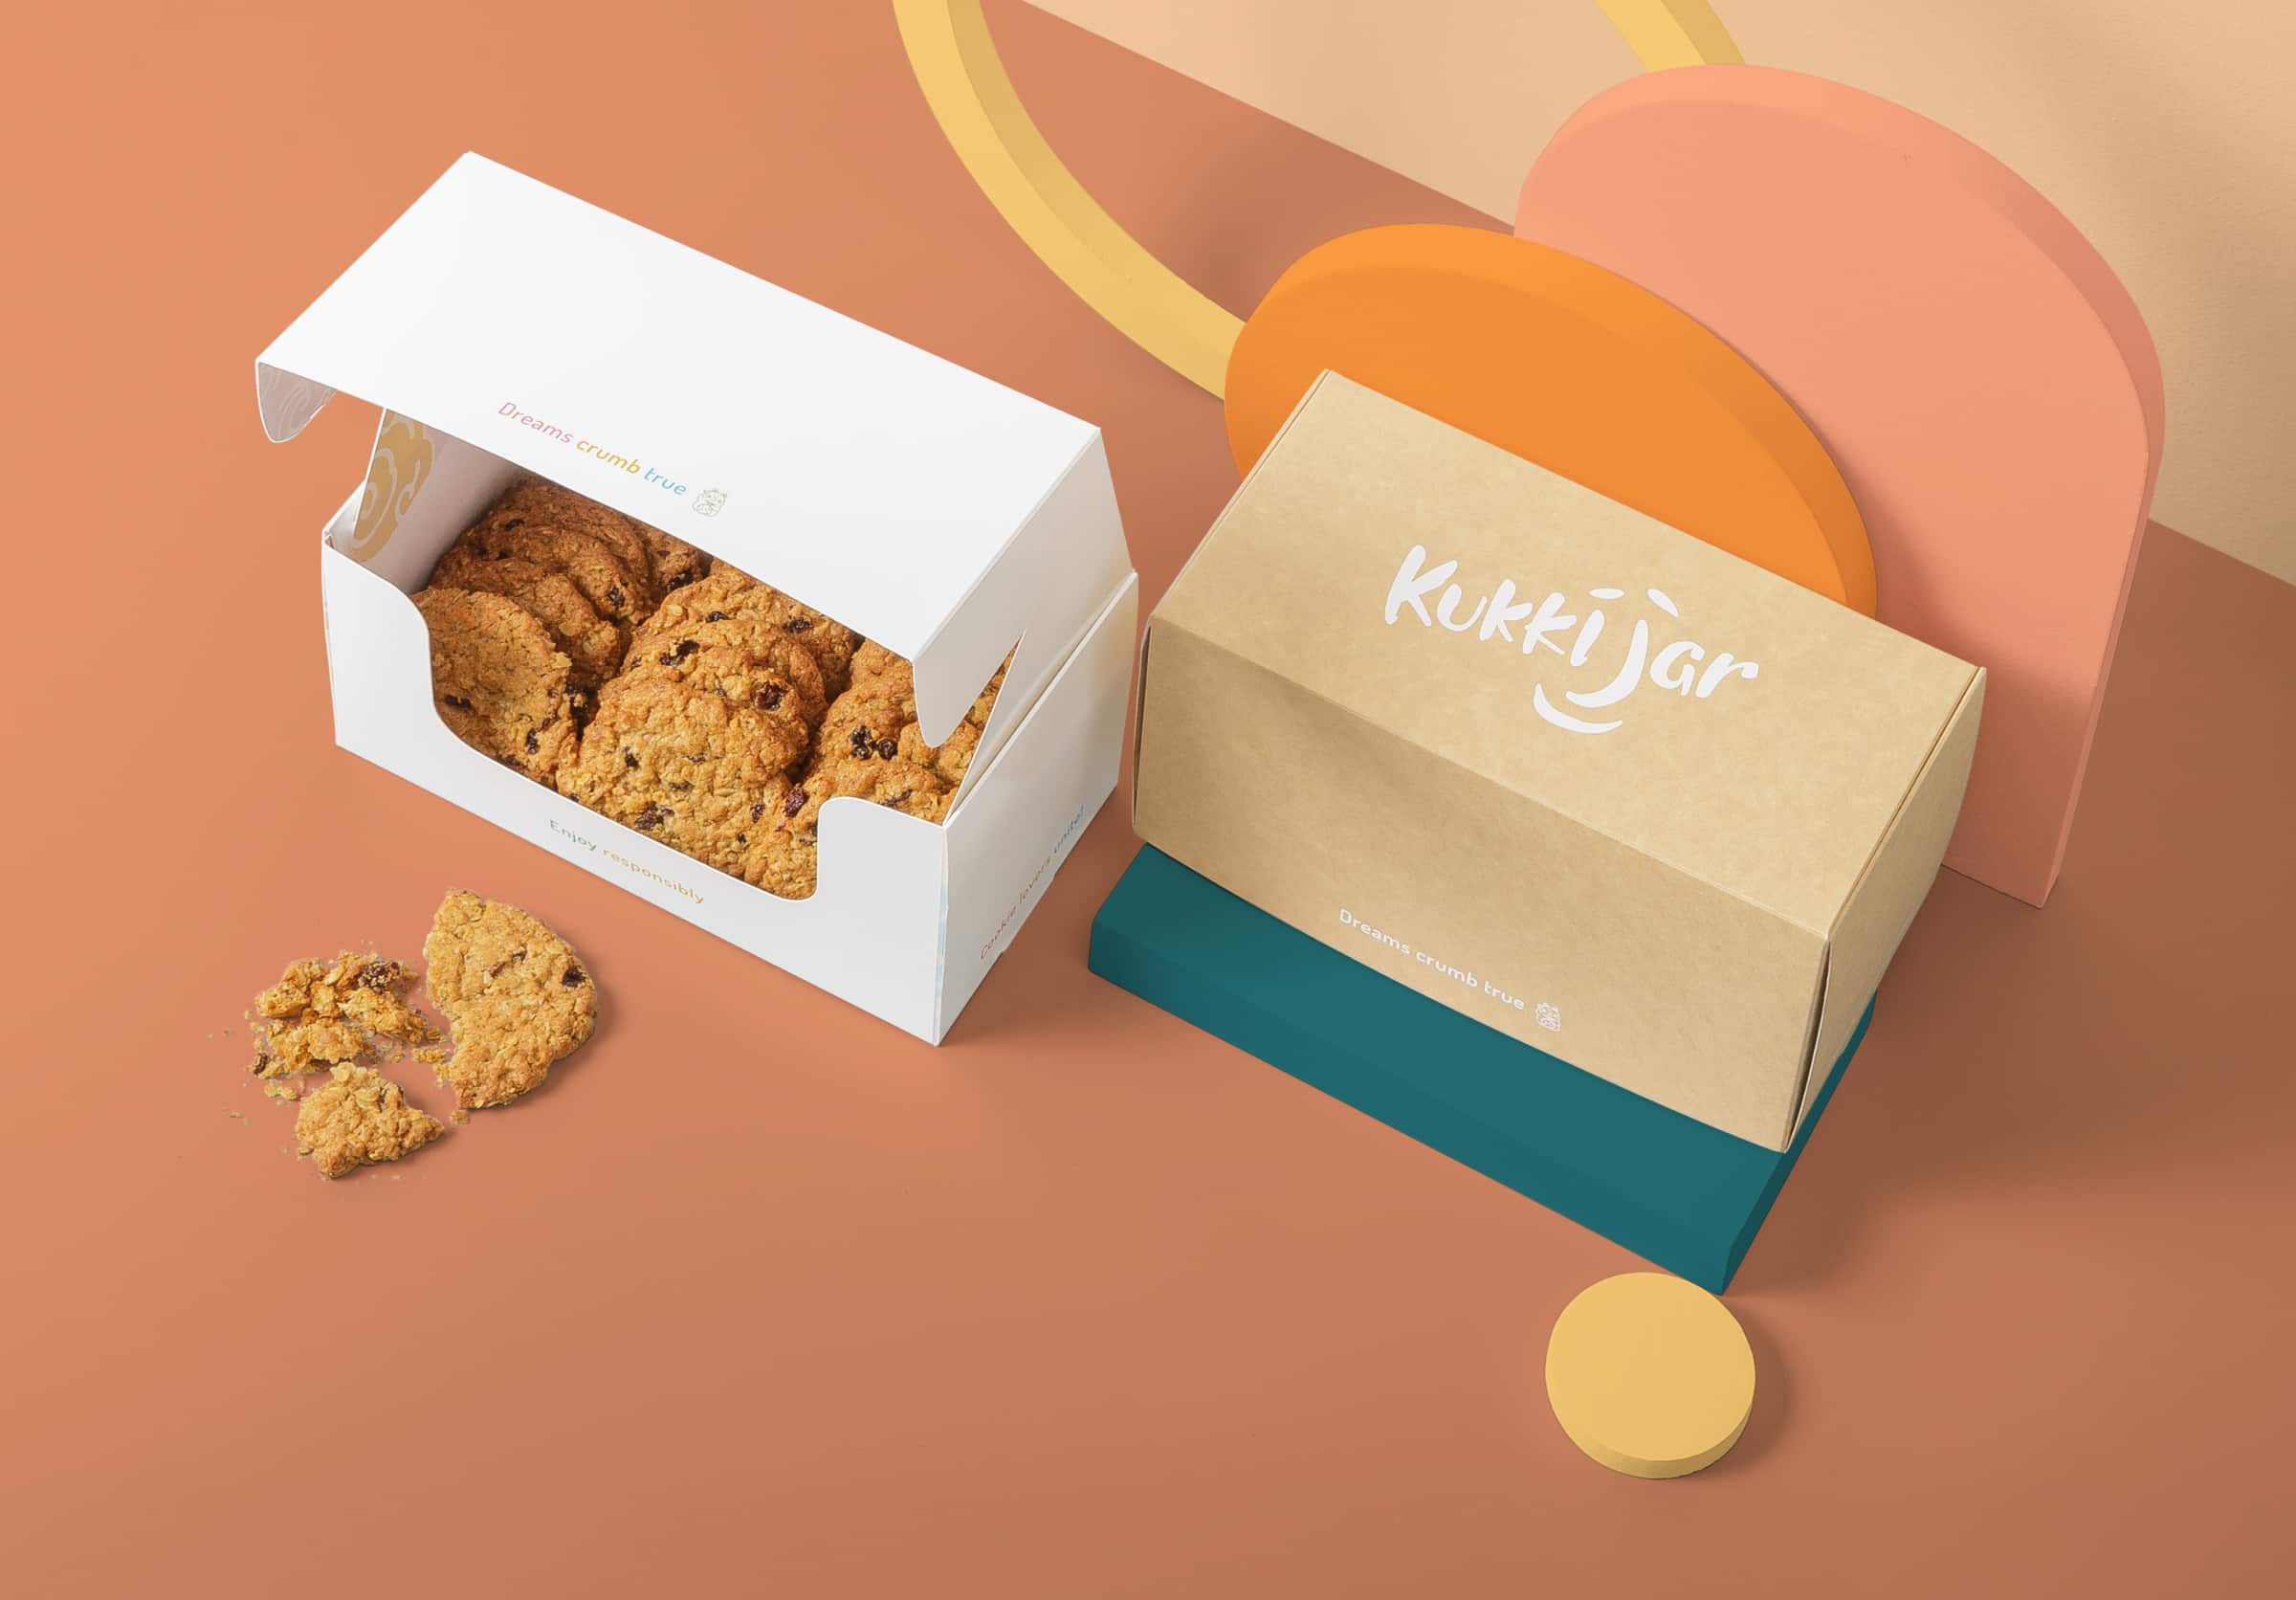 Kukki Jar cookies in packaging food packaging box.